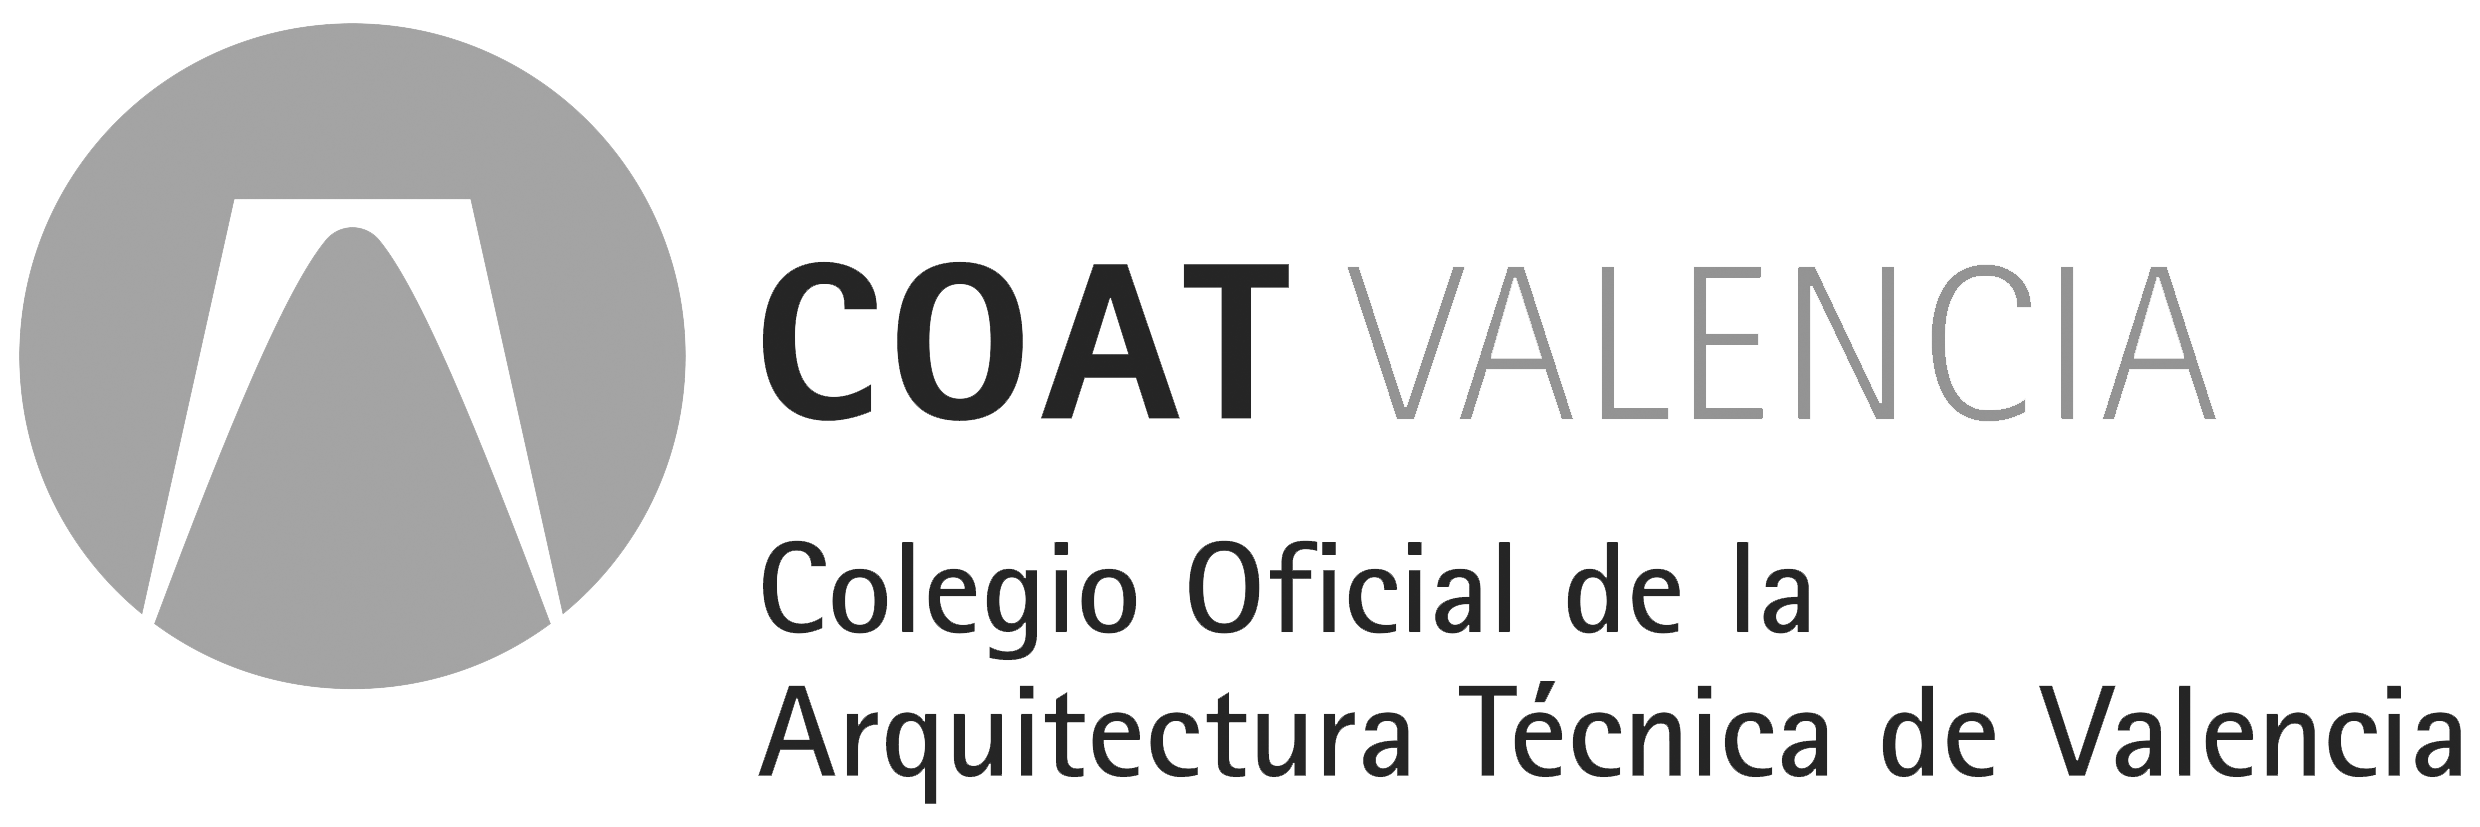 COAT_Valencia